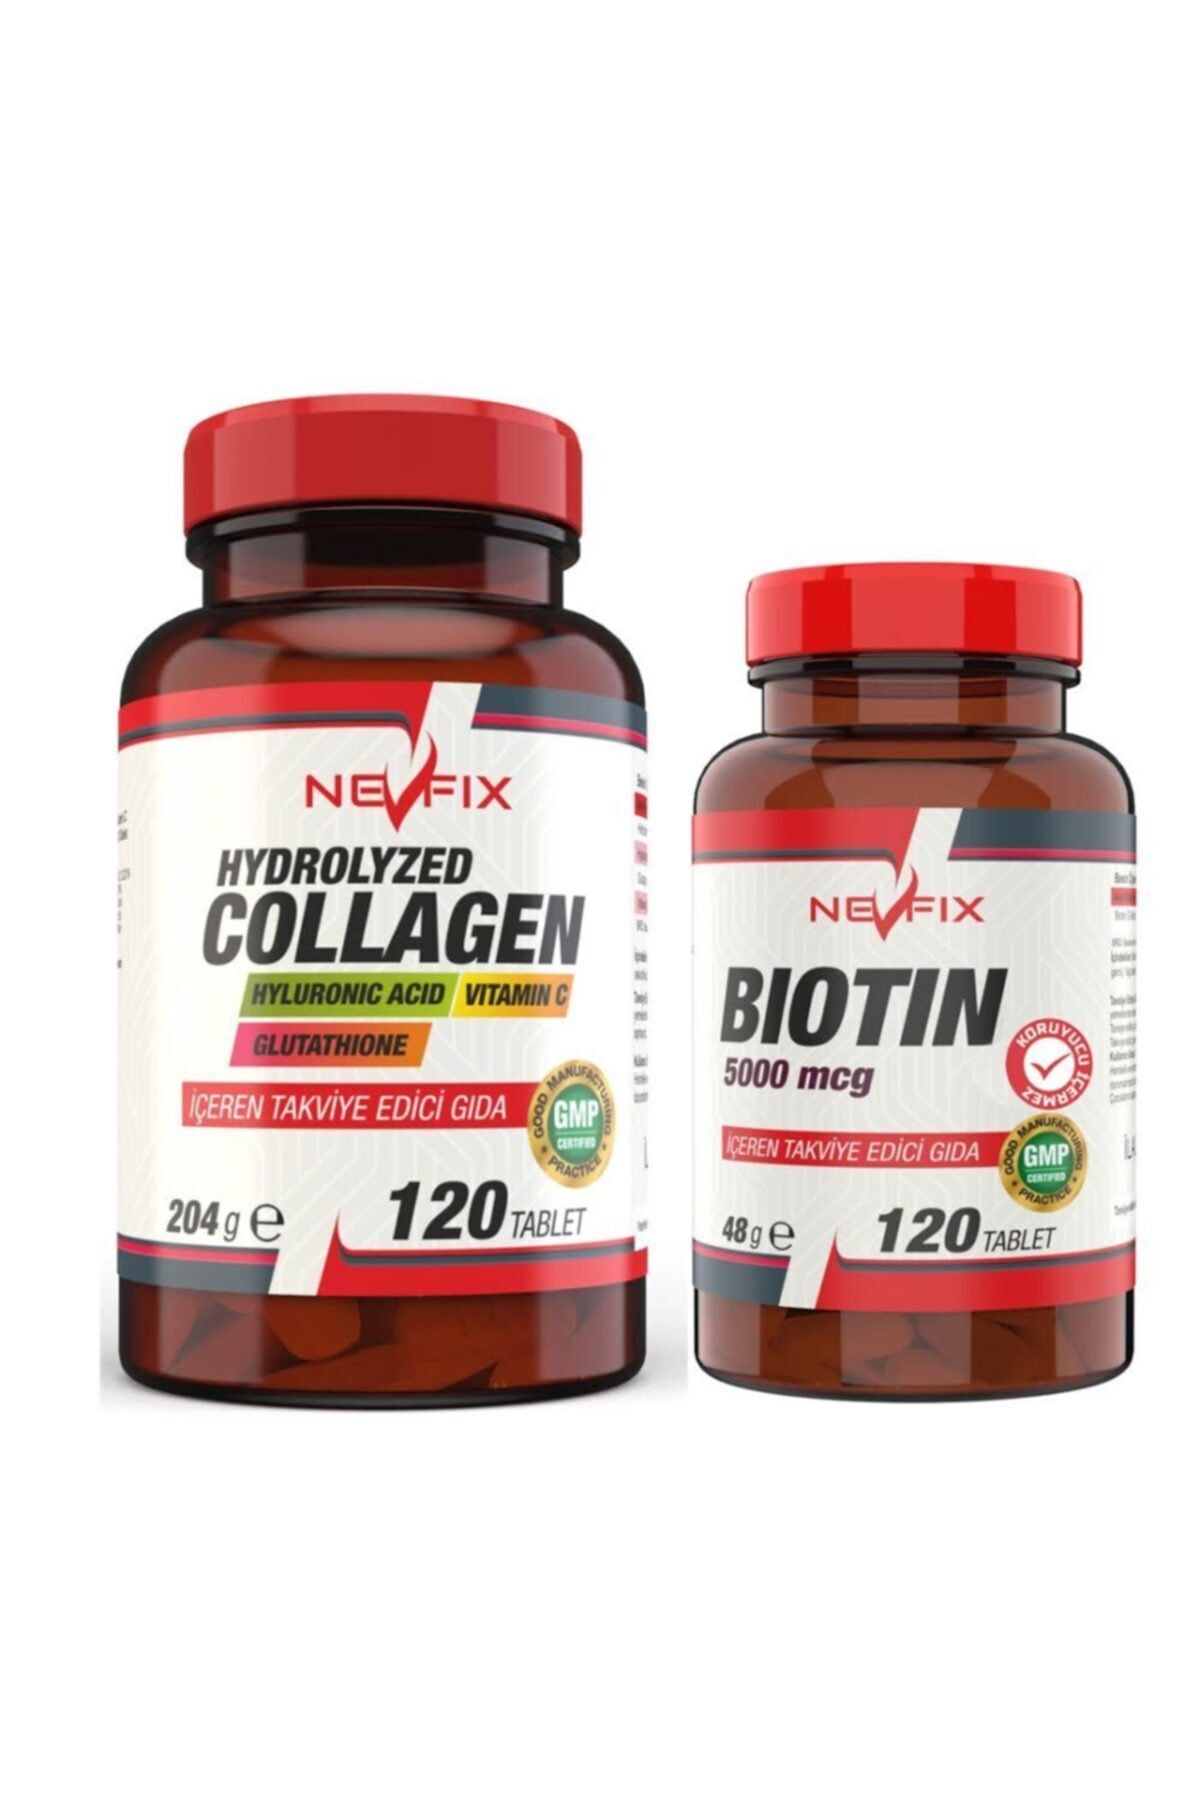 Nevfix Kolajen (collagen) Hyaluronic Acid 120 Tablet Biotin 5000 Mcg 120 Tablet